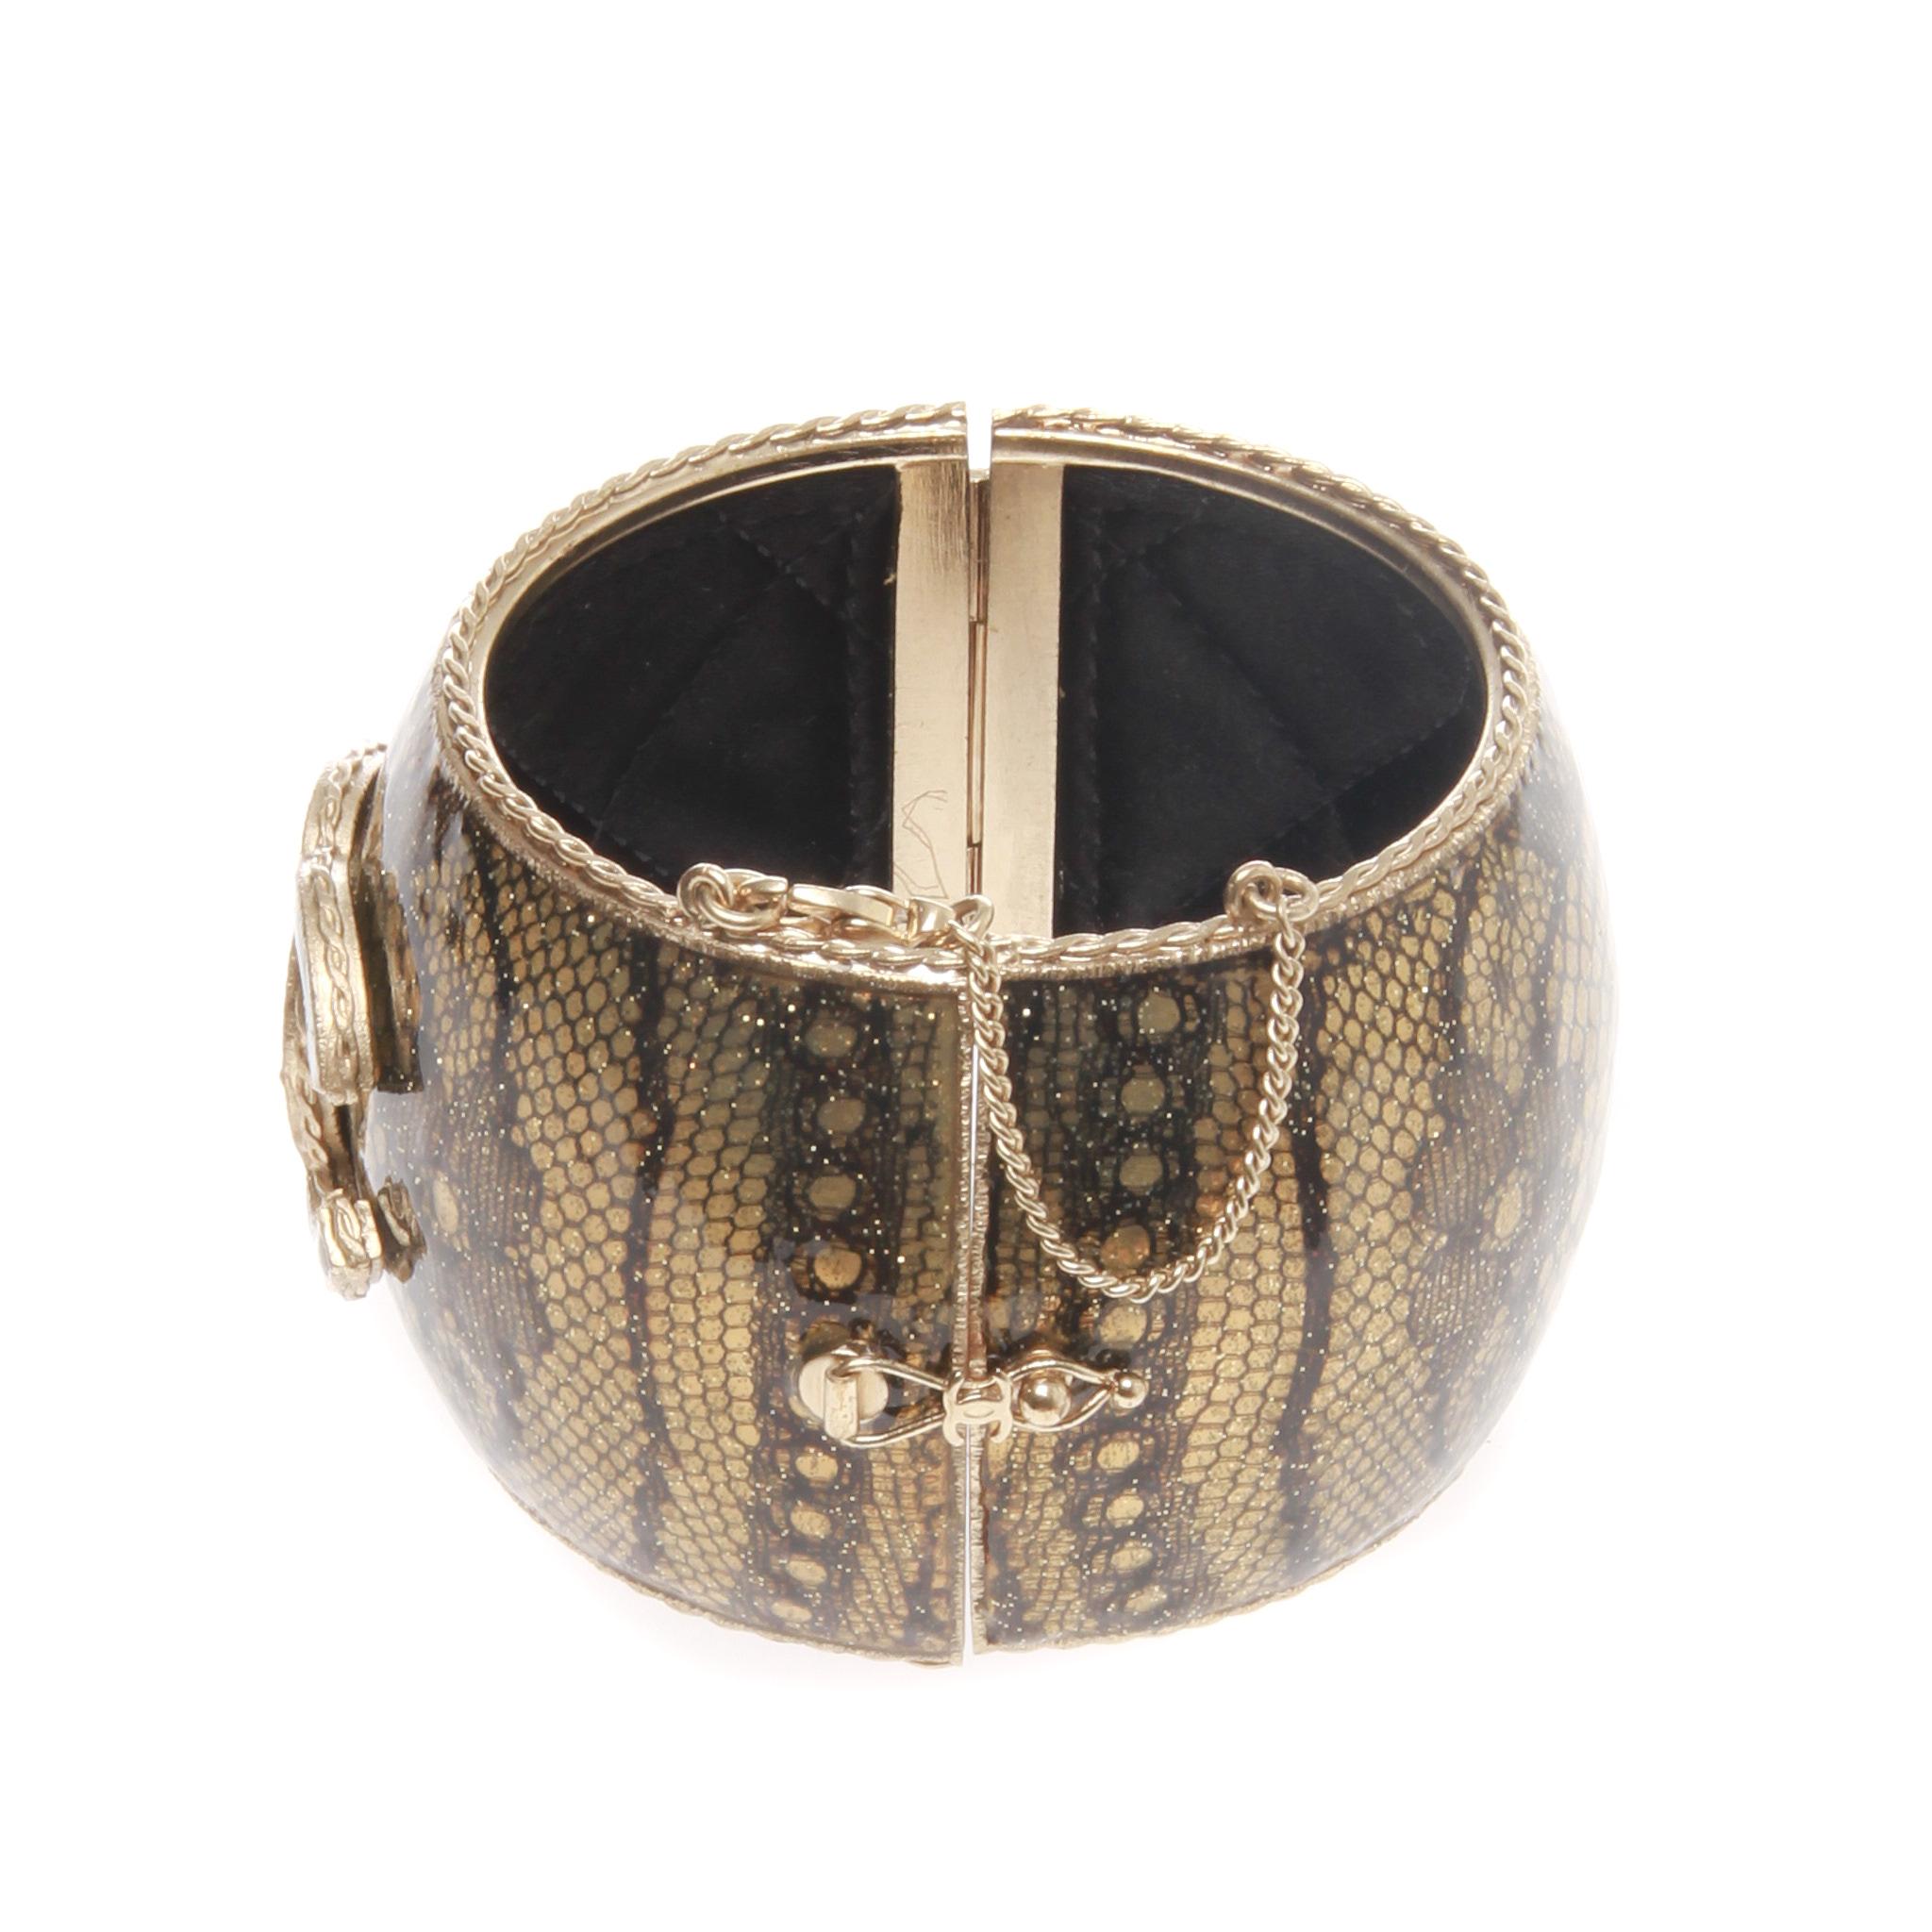 Ein unberührtes seltenes ikonisches CC Flora Spitze gemusterte Emaille Manschette Armband von CHANEL.

Dieses auffällige Chanel-Emaille-Armband ist mit dem ikonischen CC-Logo und einem Flora-Spitzenmuster verziert. Es hat ein gestepptes Innenfutter